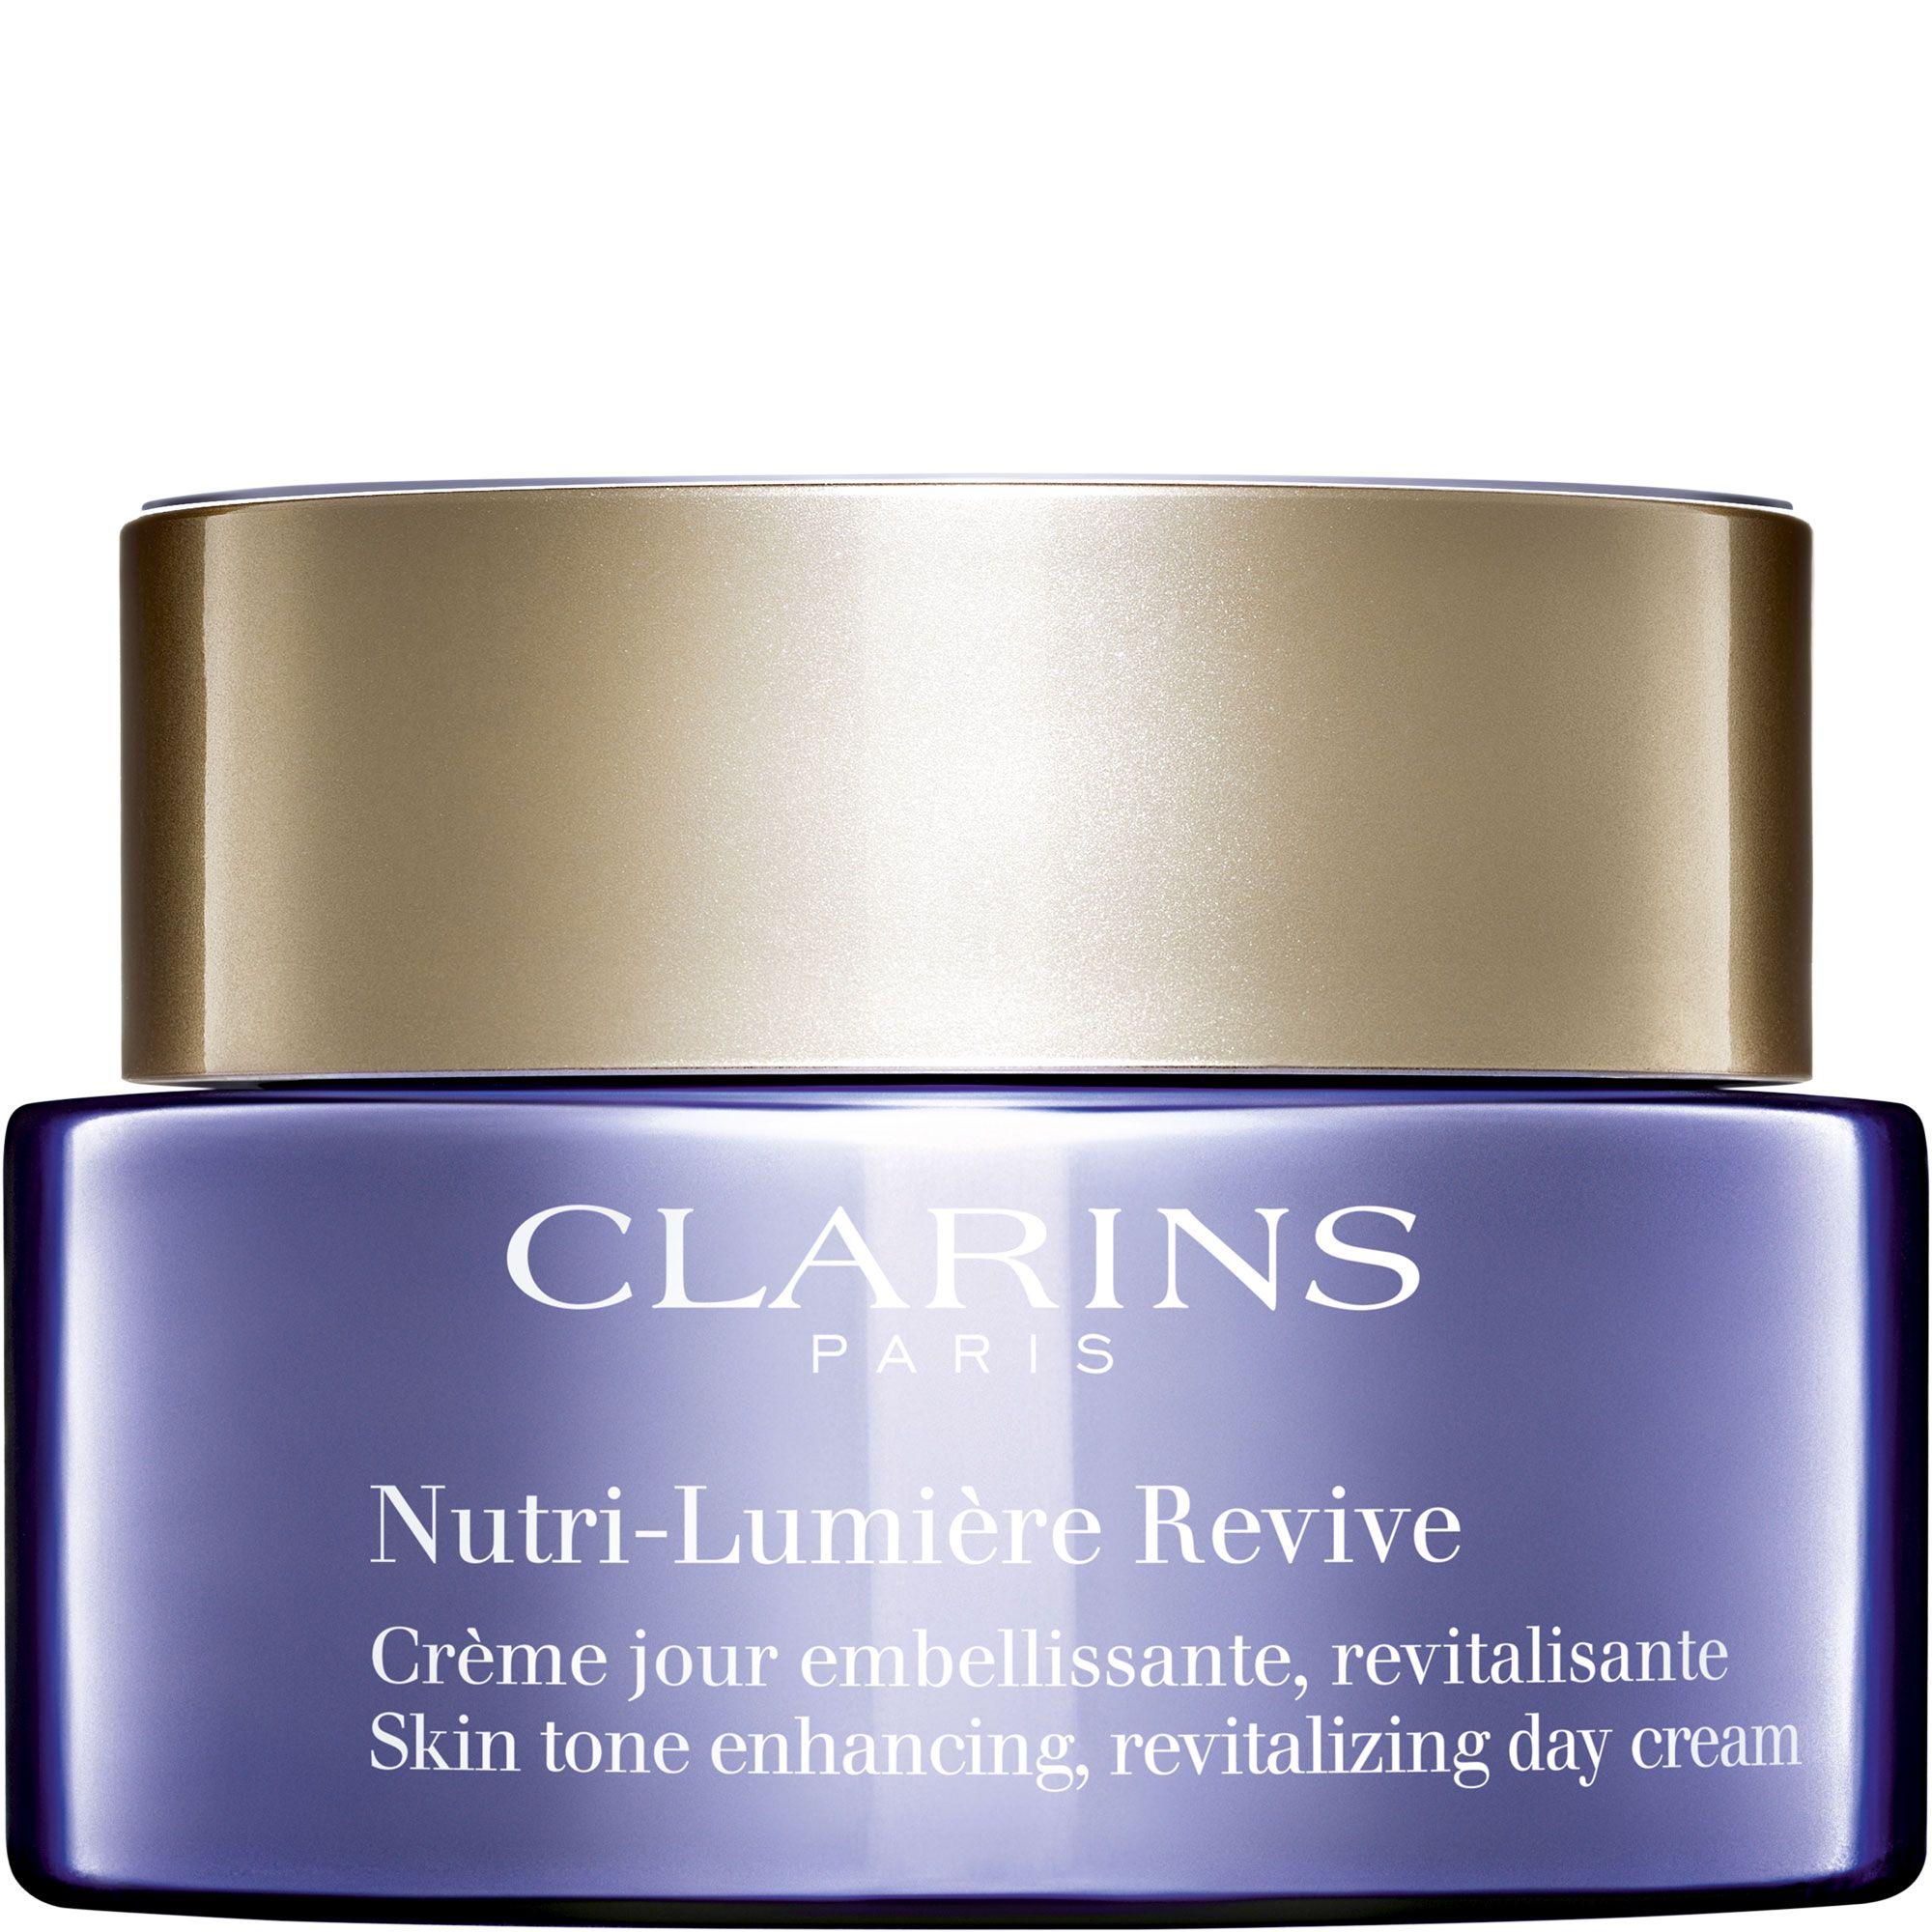 Clarins Nutri-Lumière - Crème jour embellissante revitalisante Soin anti-âge 60+ Pot 50ml